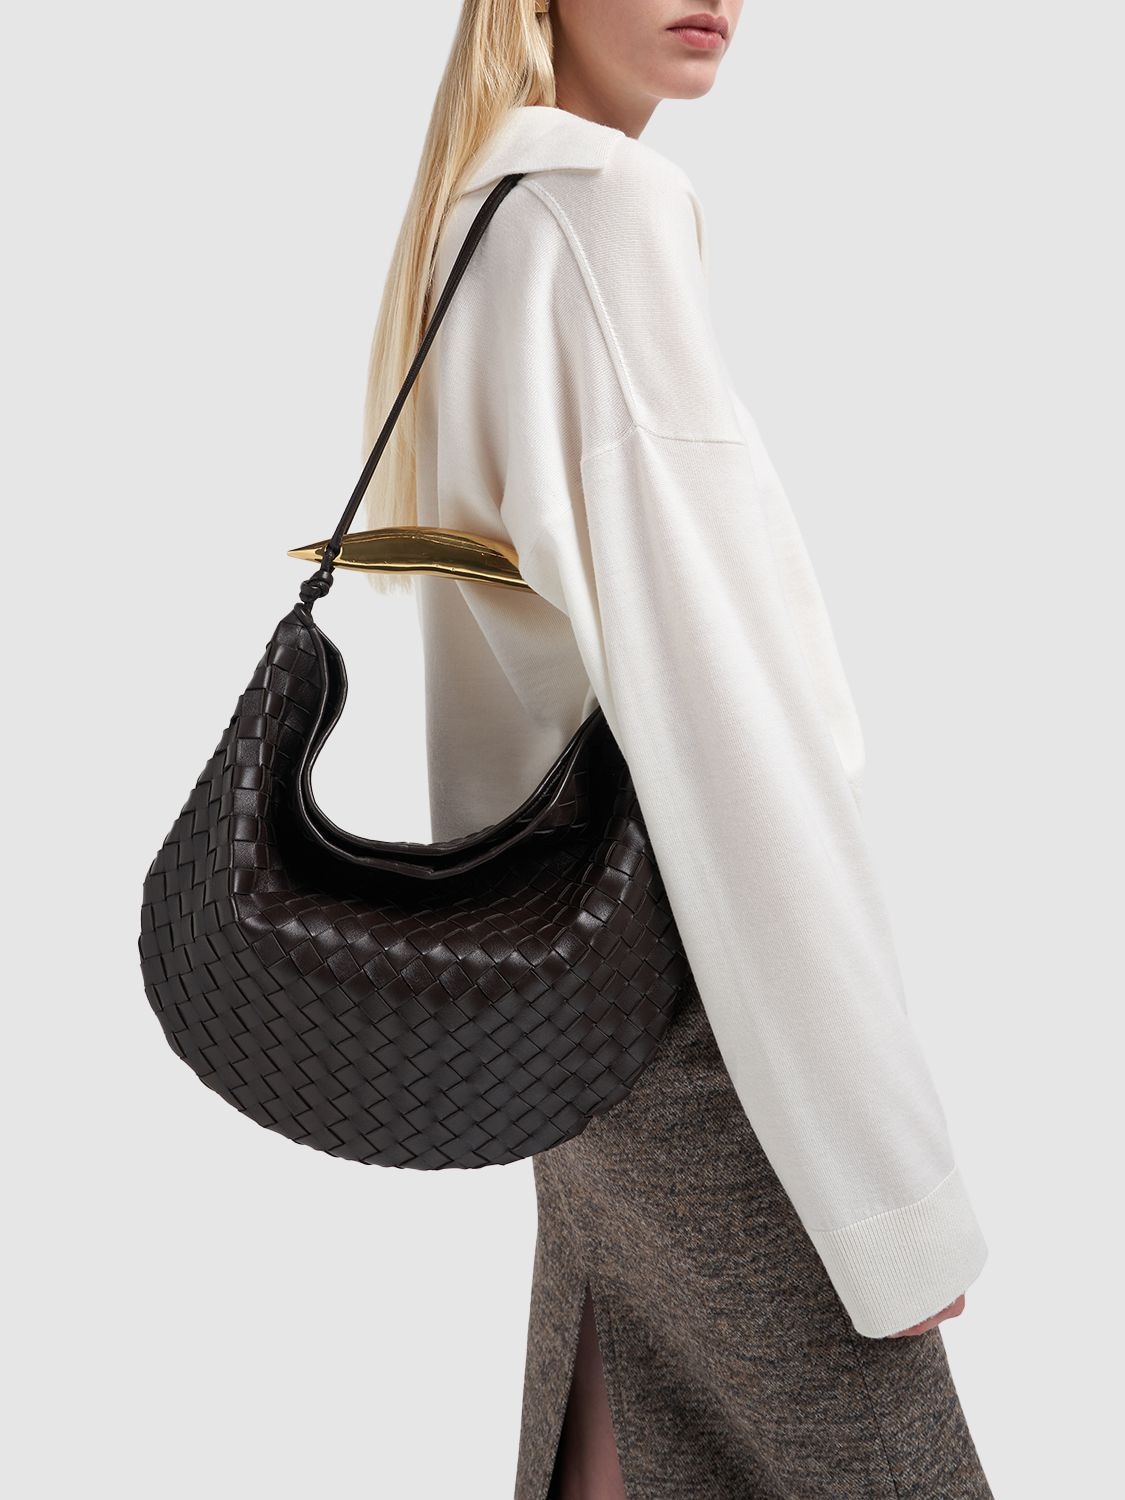 Bottega Veneta Sardine Medium Intrecciato Leather Top-Handle Bag